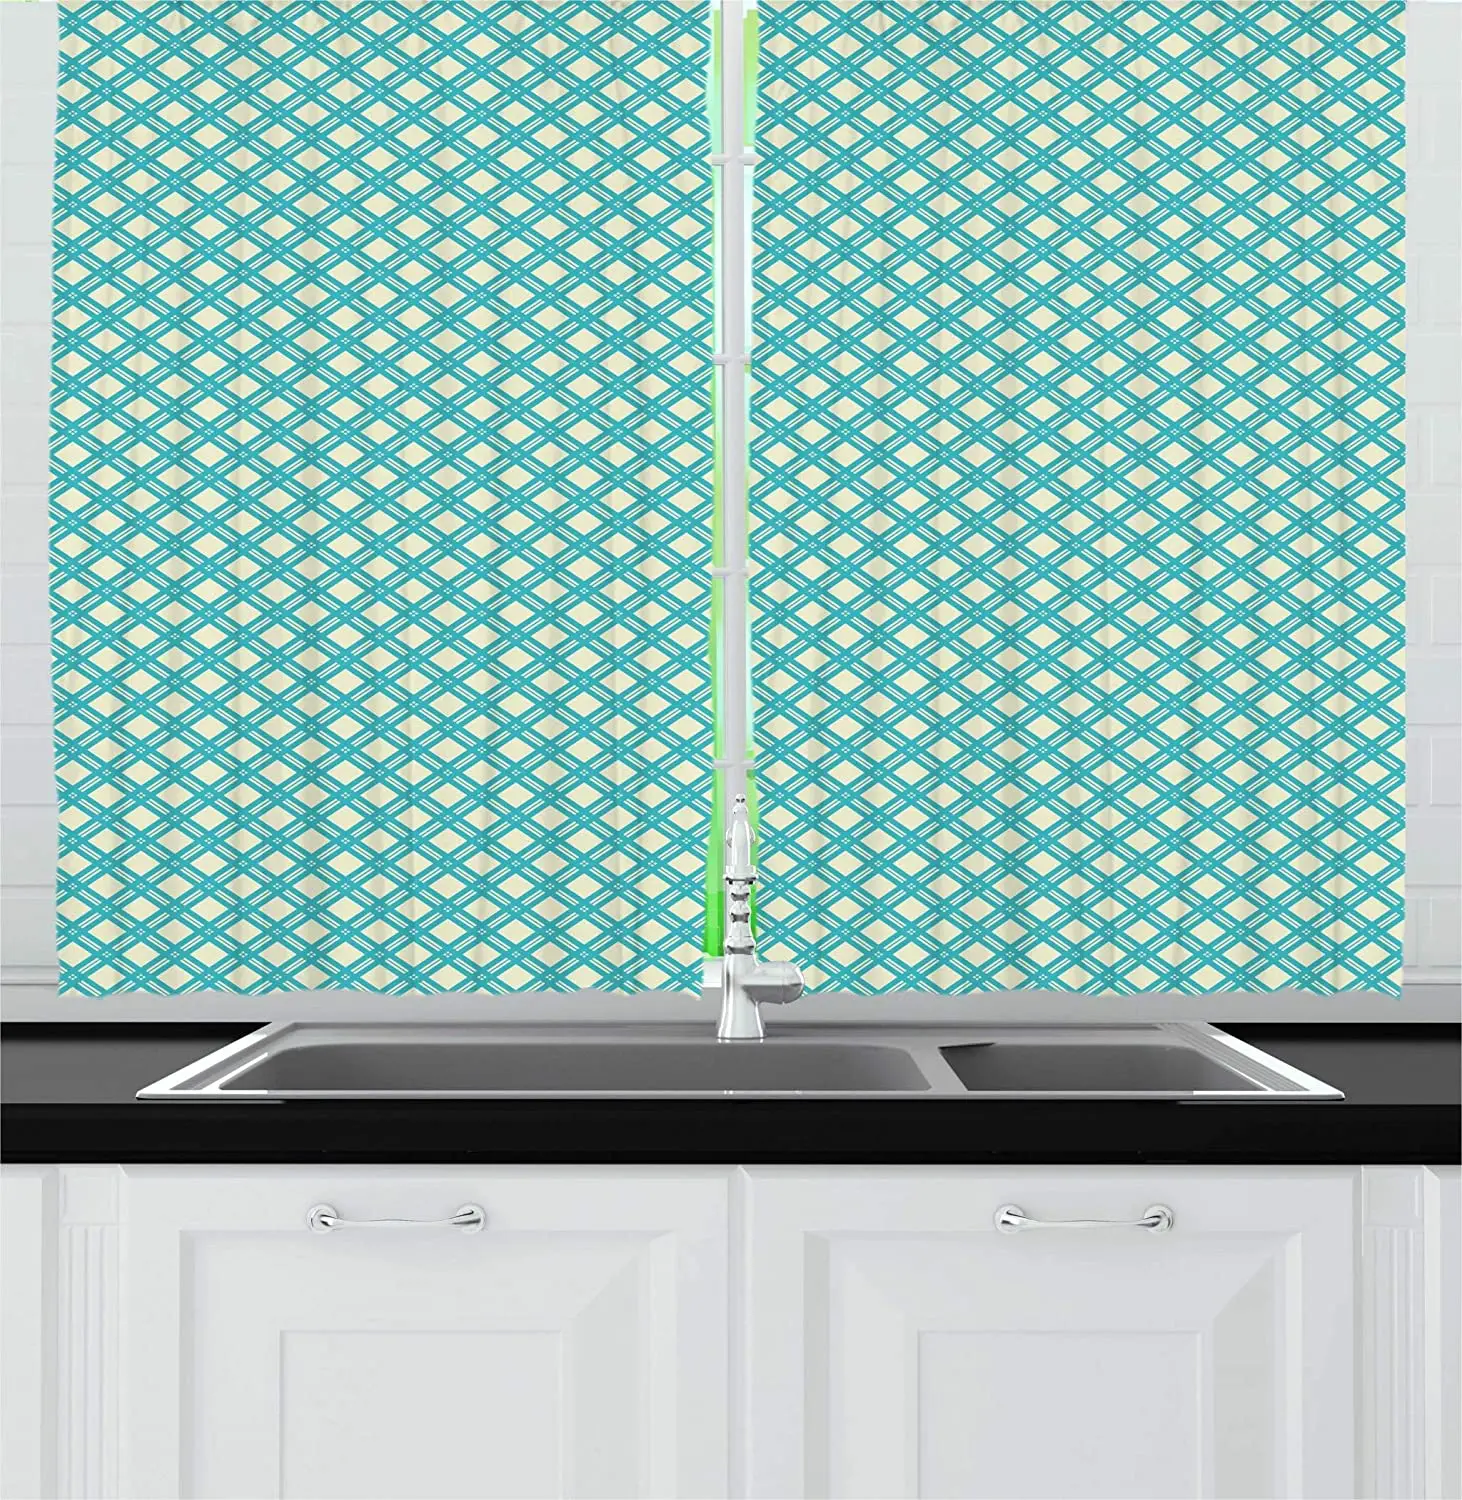 

Светонепроницаемые шторы, зеленые монохромные решетчатые узоры, геометрические диагональные полосы, плитка, дизайн кухни